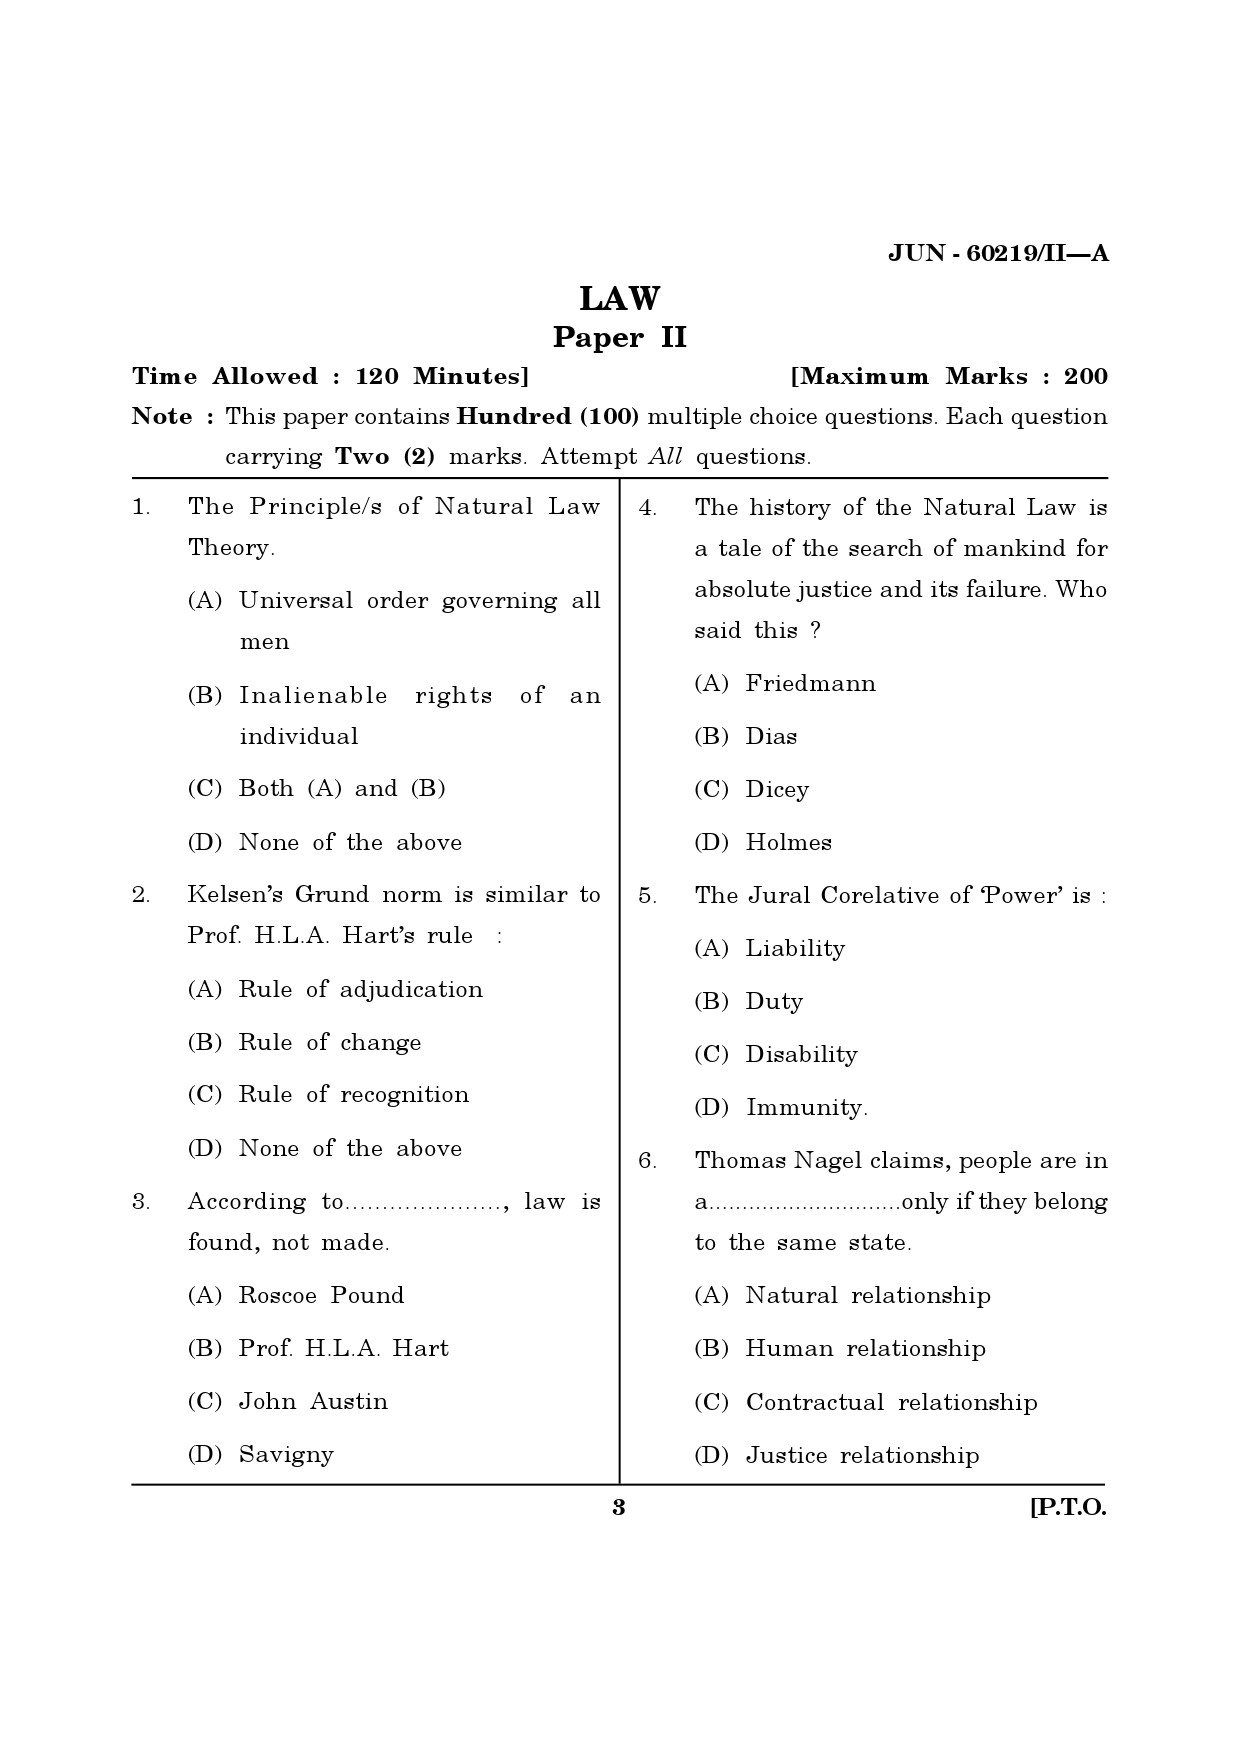 Maharashtra SET Law Question Paper II June 2019 2